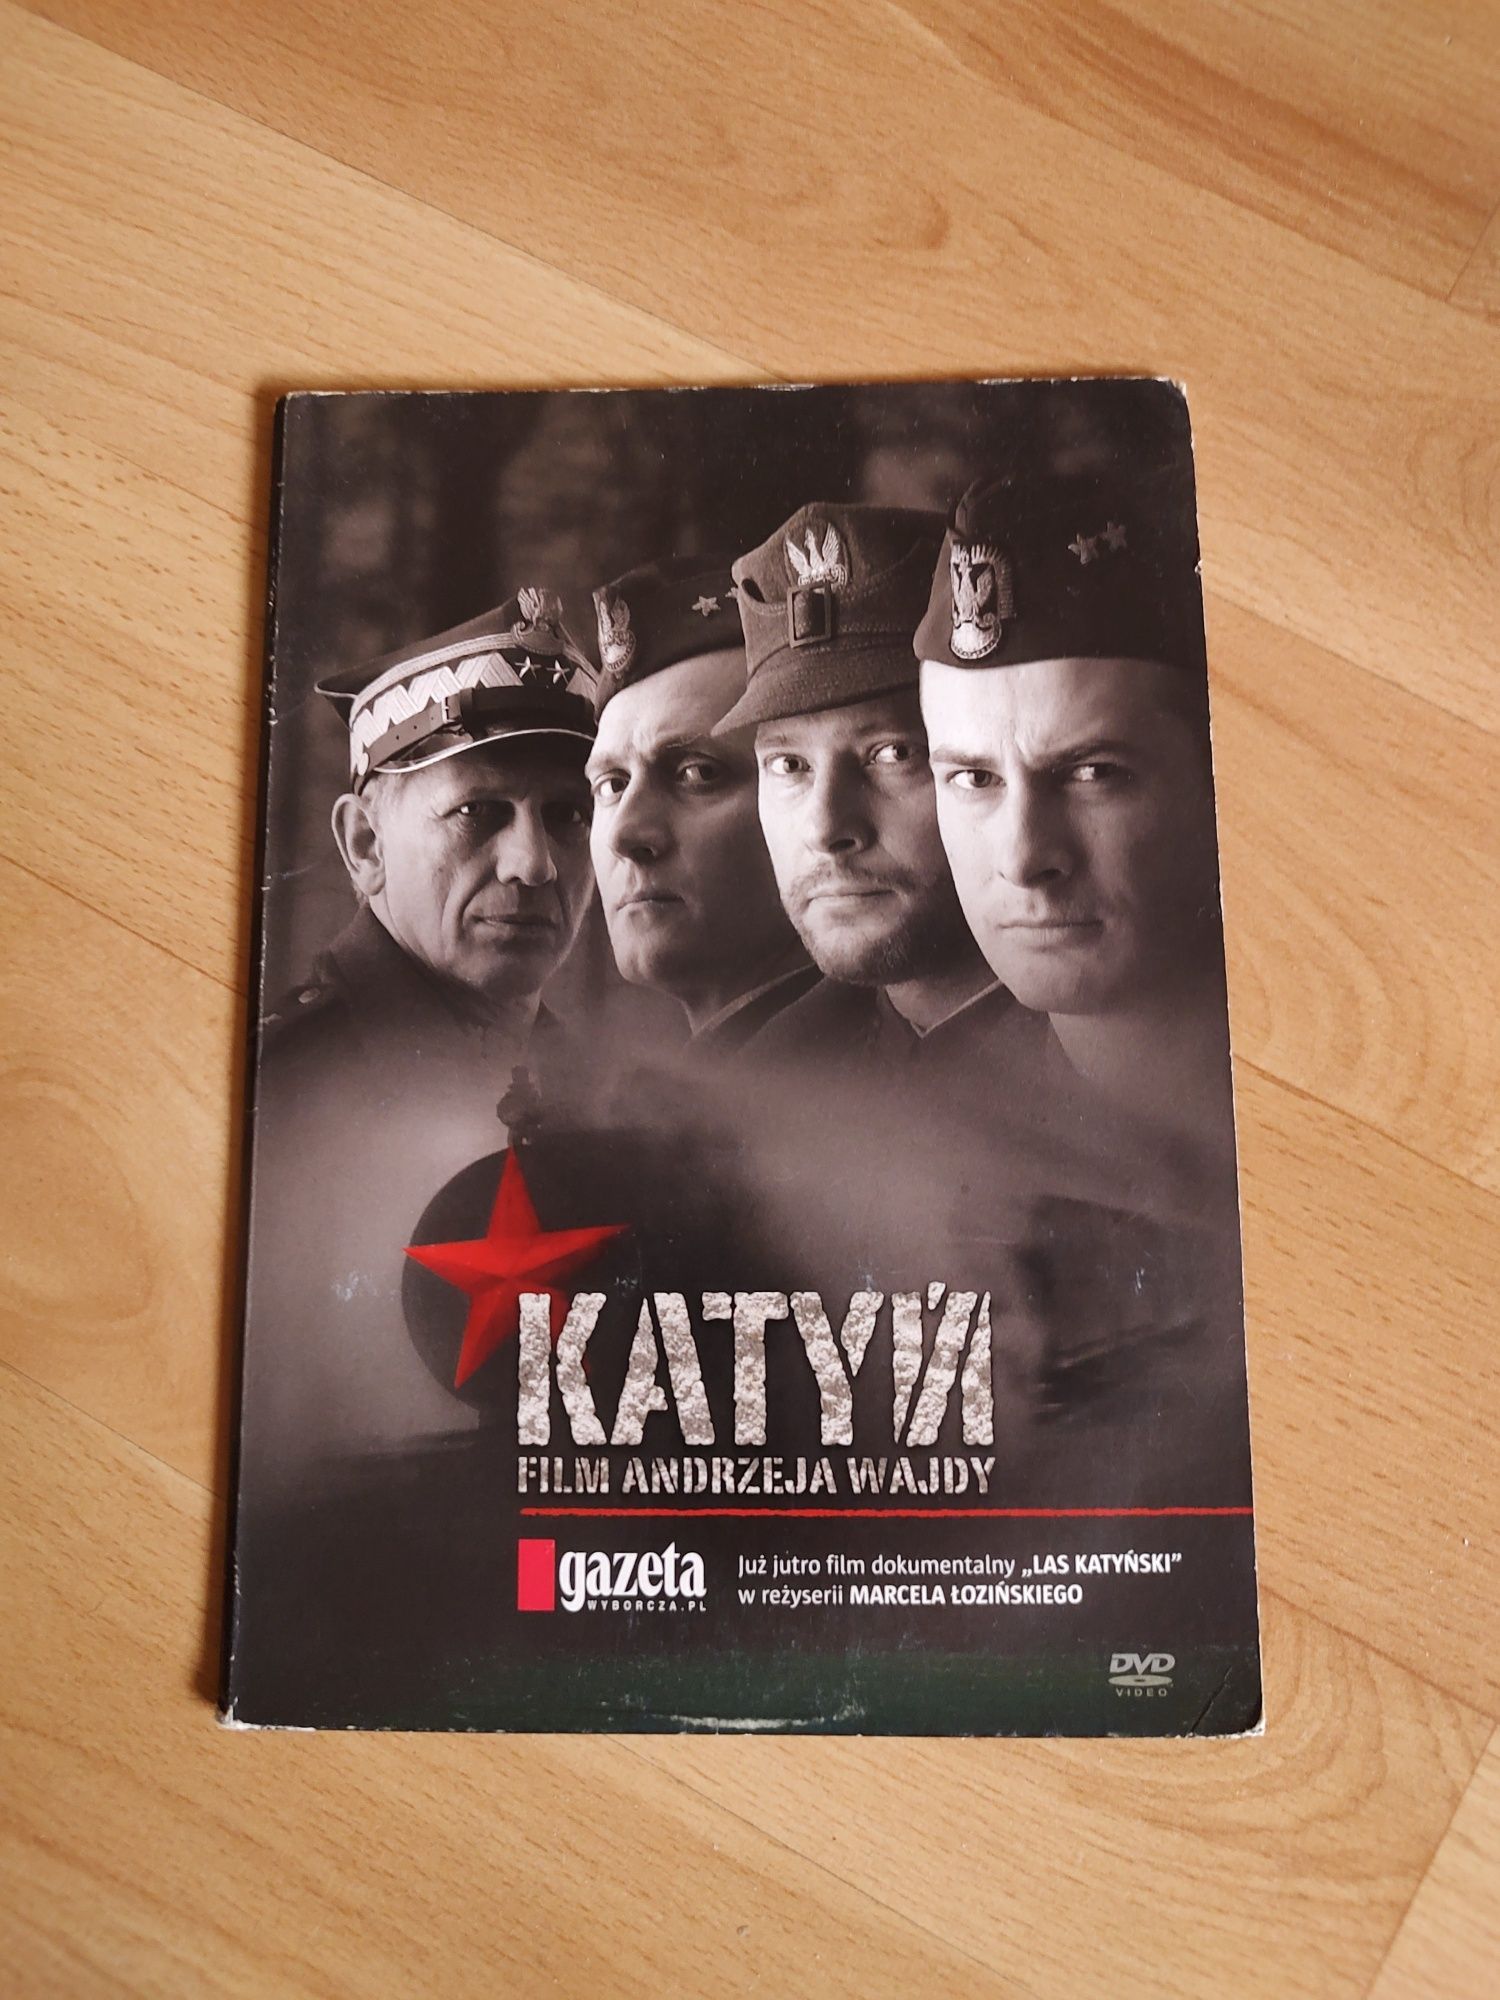 "Katyń" film Andrzeja Wajdy